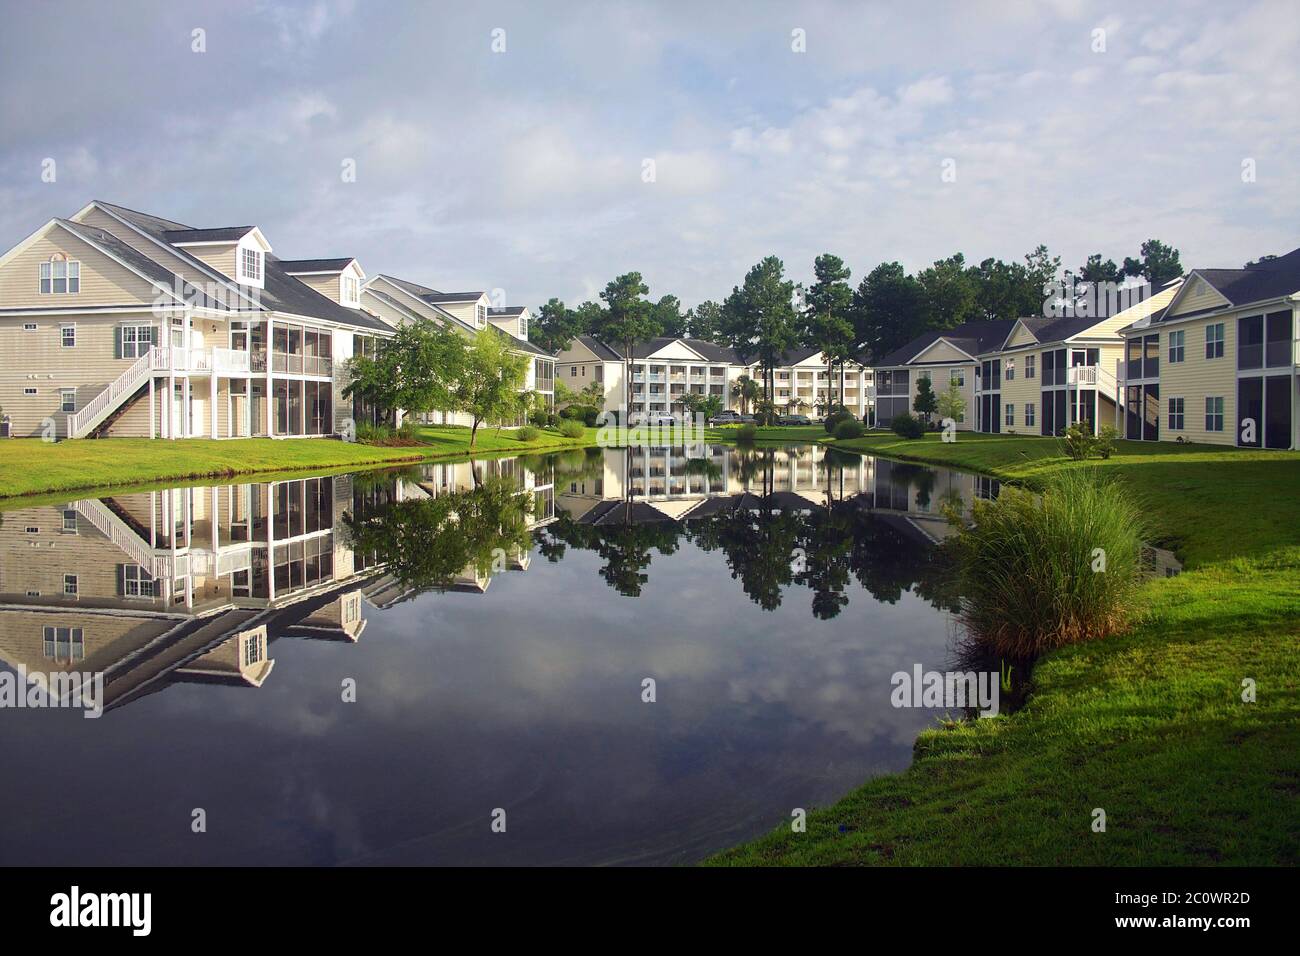 Hintergrund mit einem modernen Viertel mit Gebäuden rund um den Teich. Häuser und Bäume spiegeln sich im ruhigen Wasser während der schönen bewölkten Morgen Stockfoto